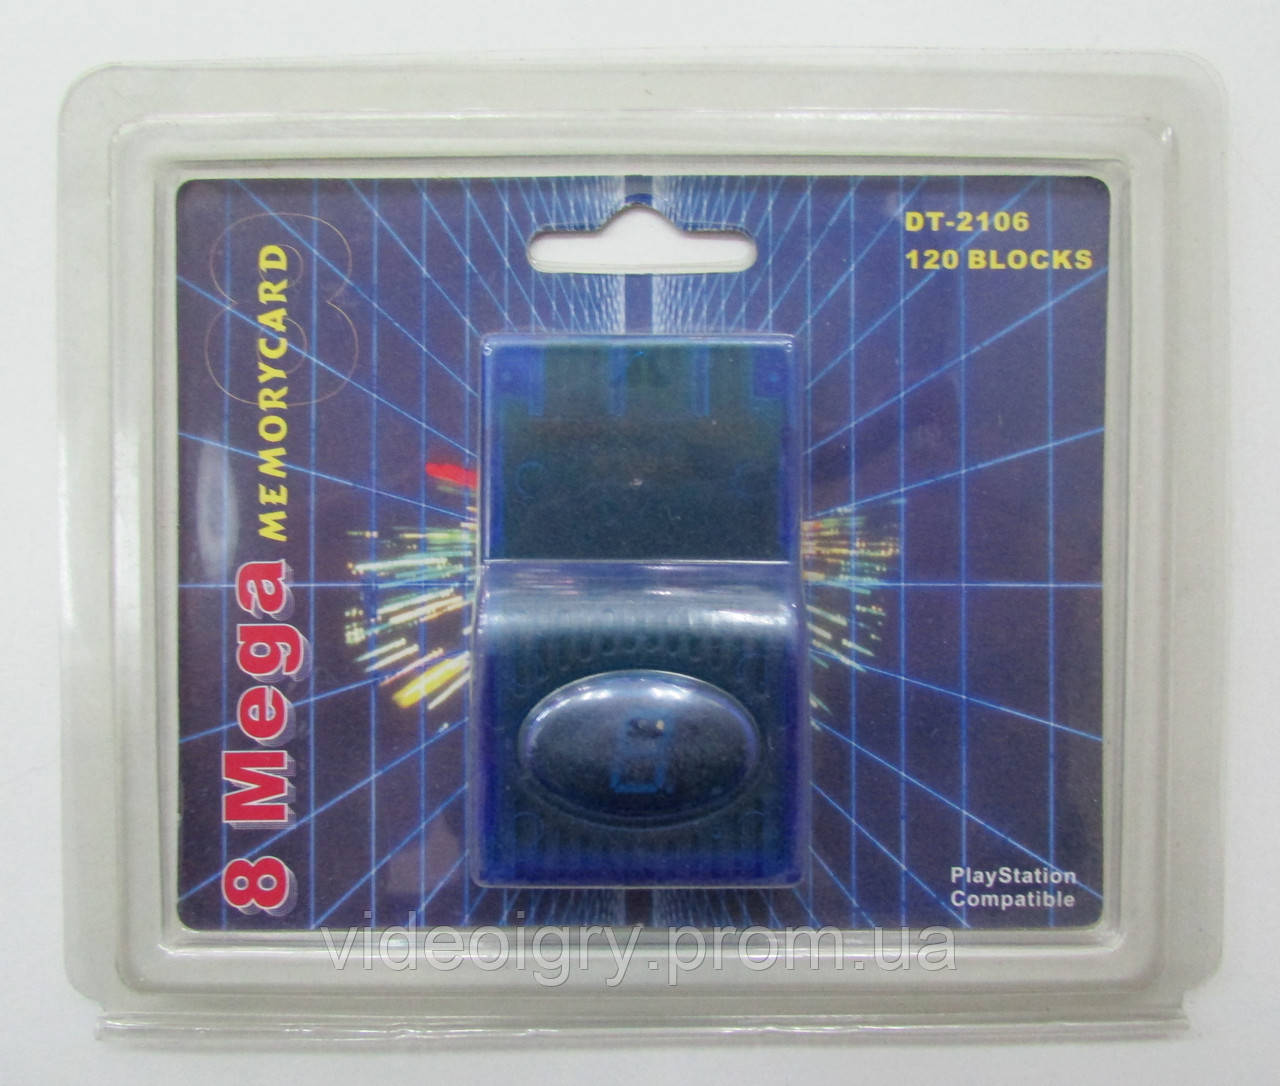 Memory Card 8 Mega 120 blocks Playstation Compatible Blue